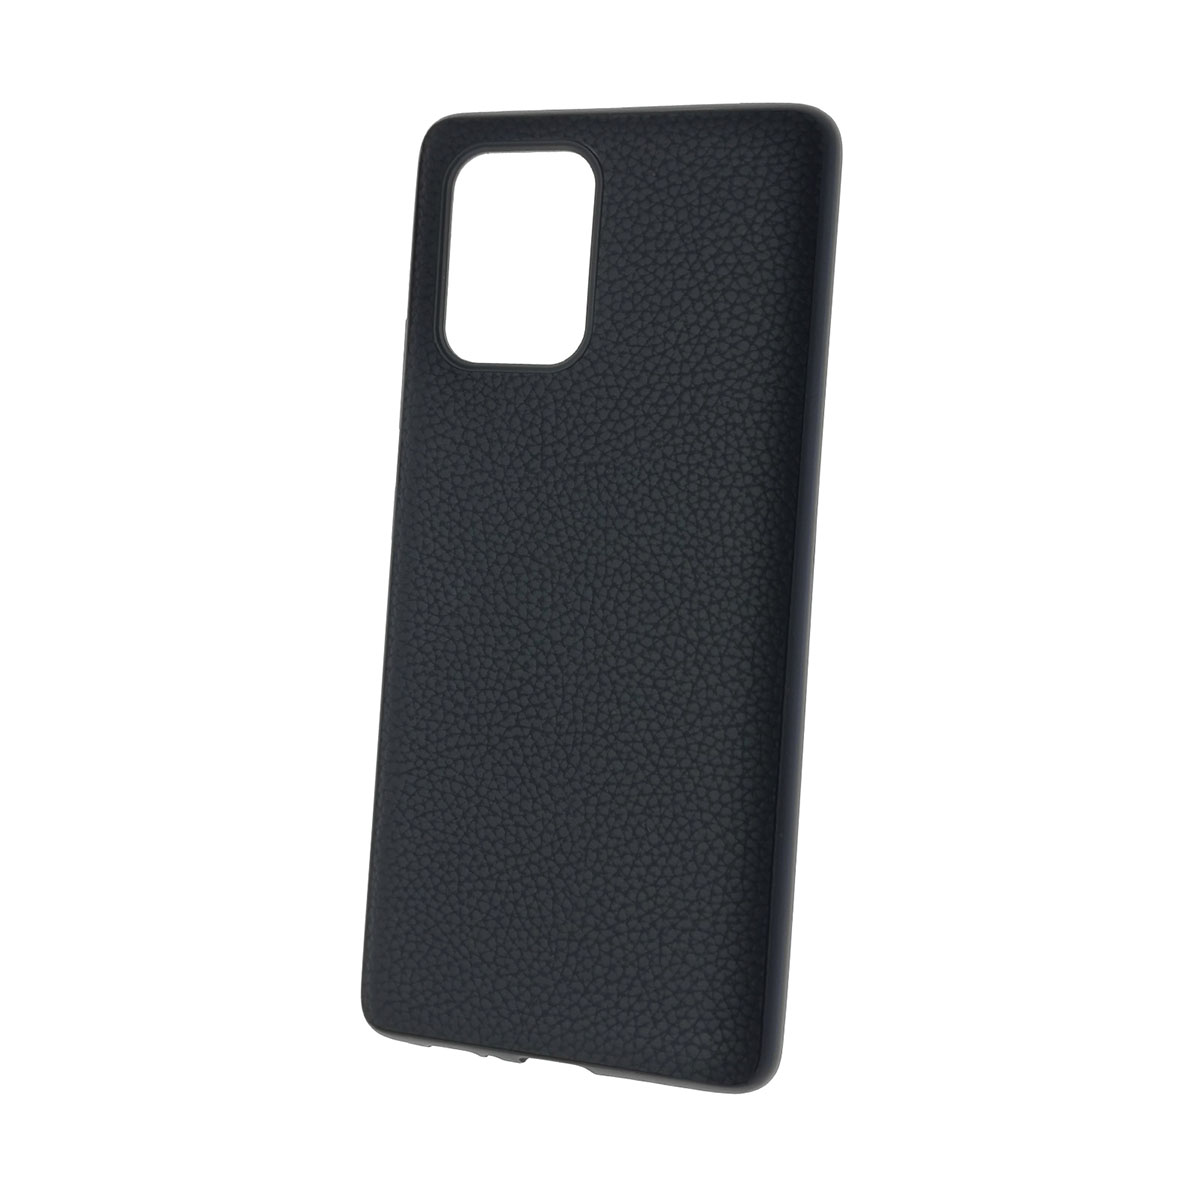 Чехол накладка для SAMSUNG Galaxy S10 Lite (SM-G770), силикон, под кожу, цвет черный.